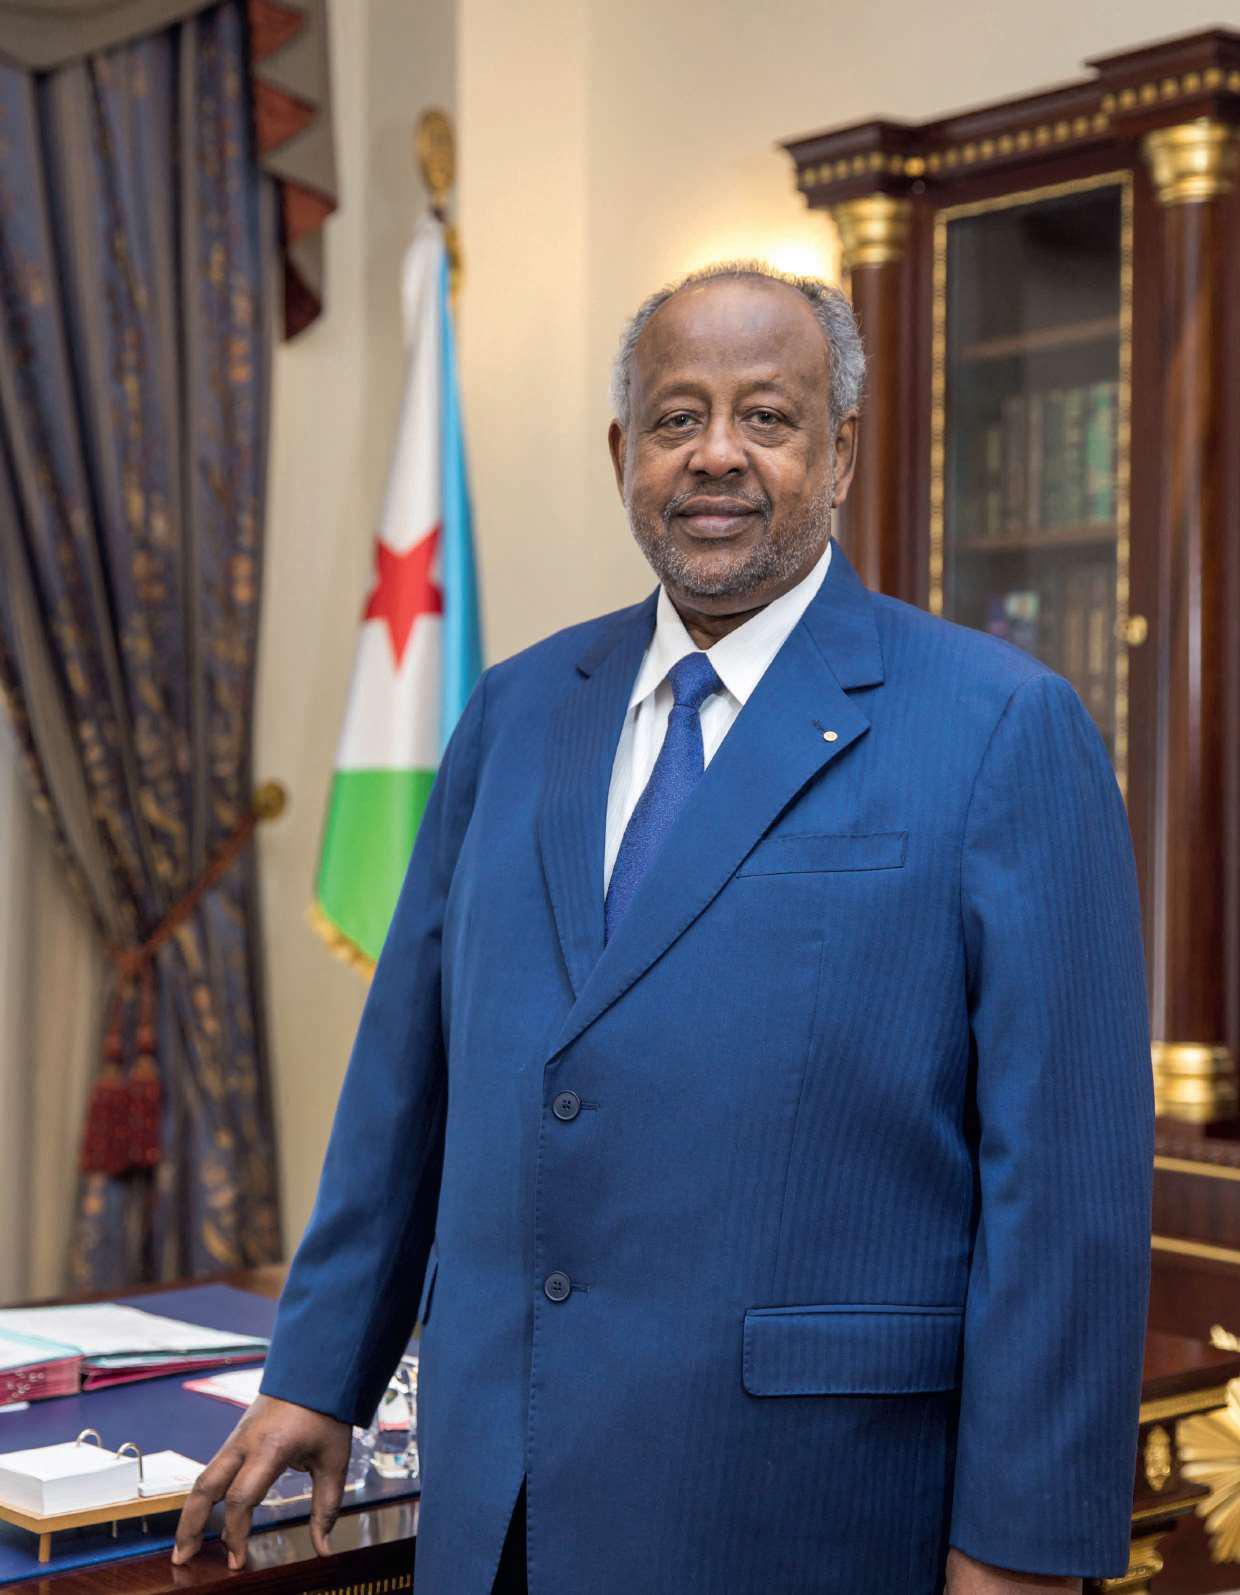 Le président Ismaïl Omar Guelleh, dans son bureau. Il a été réélu pour la cinquième fois consécutive en avril 2021.PATRICK ROBERT 